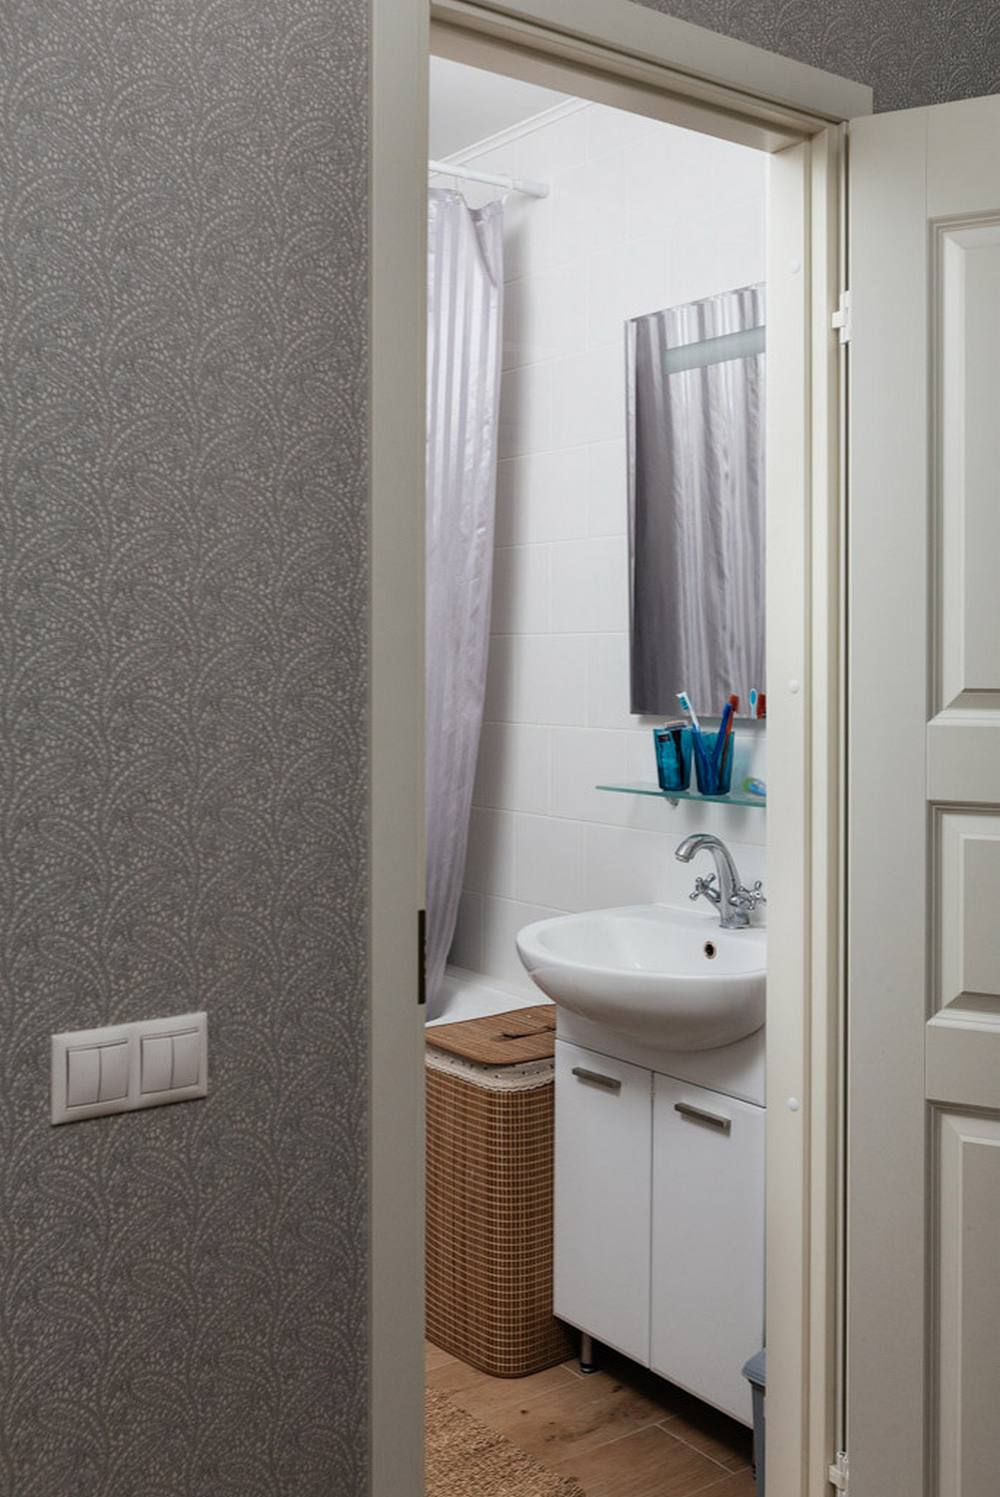 Phòng tắm và nhà vệ sinh được bố trí đơn giản nhưng đầy đủ tiện nghi, hai khu vực này được phân vùng với nhau bởi tấm rèm che màu trắng kẻ sọc xám. Chiếc giỏ mây lưu trữ cũng là một yếu tố xinh xắn cho phòng tắm đáng yêu hơn.